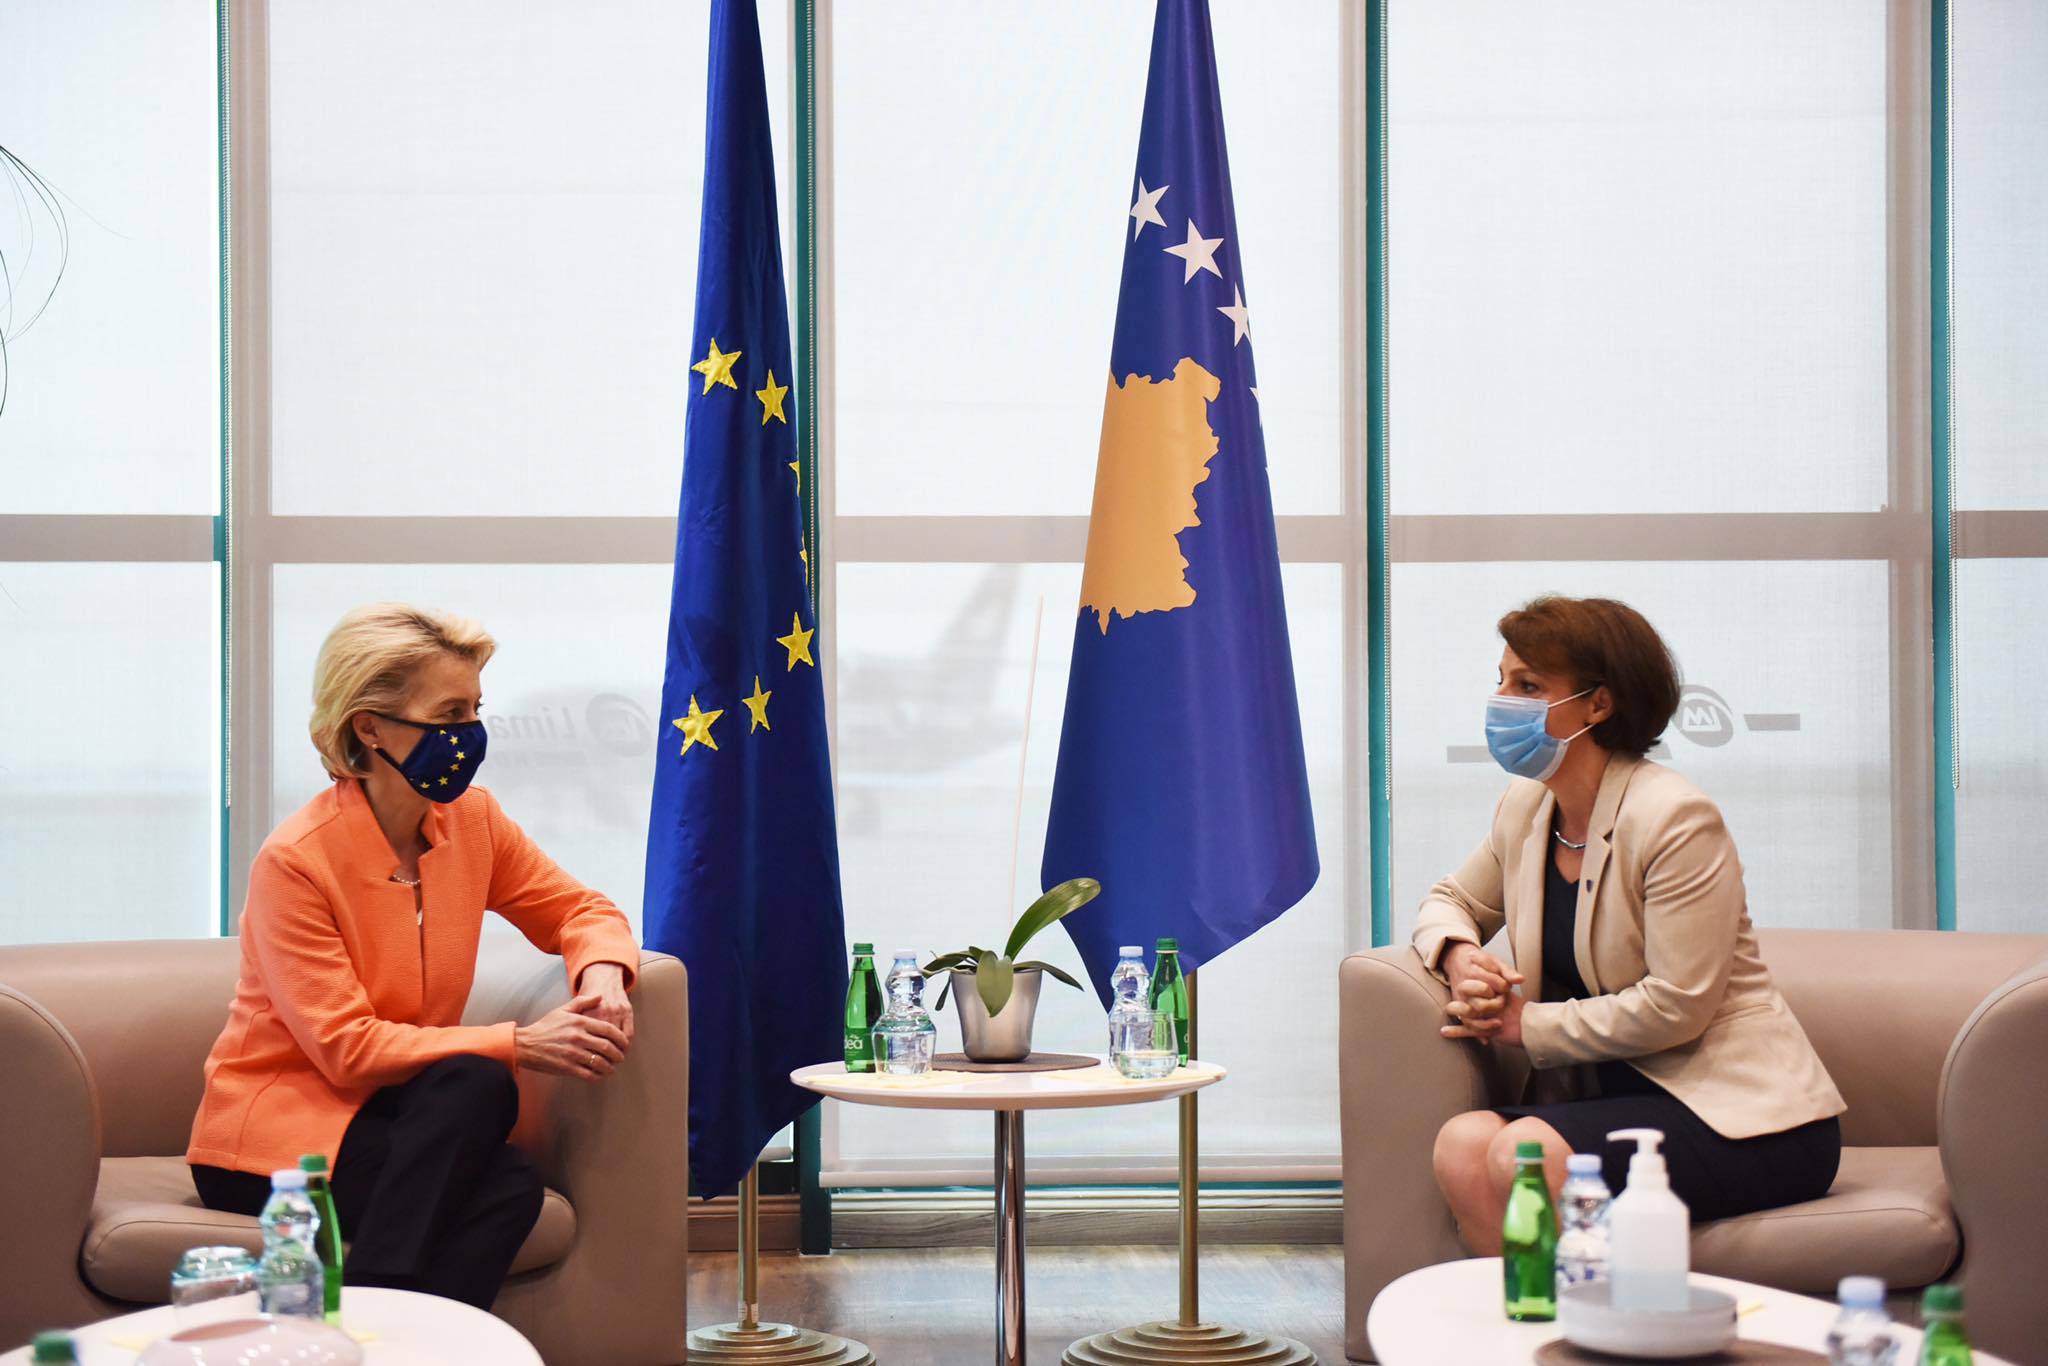 Gërvalla pret në takim Von der Leyen, flasin për rrugëtimin e Kosovës drejt BE-së